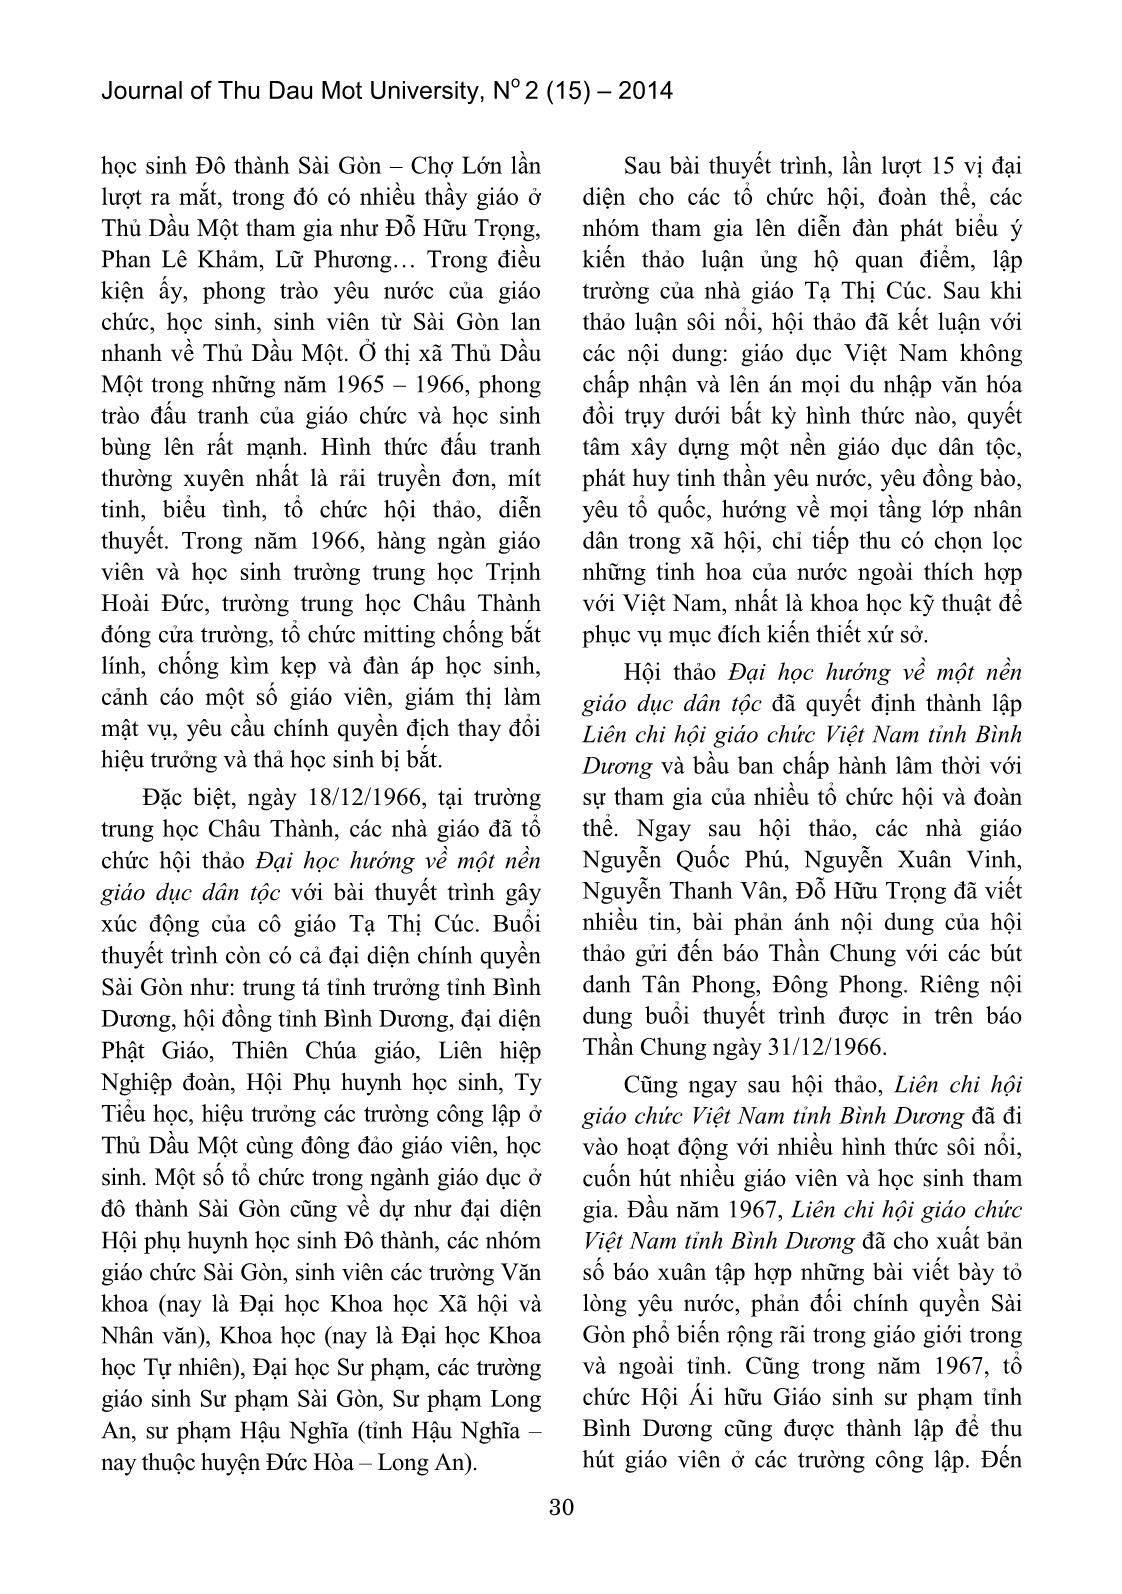 Hoạt động yêu nước của giáo viên và học sinh Thủ Dầu Một – Bình Dương trong vùng địch tạm chiếm (1954 – 1975) trang 4